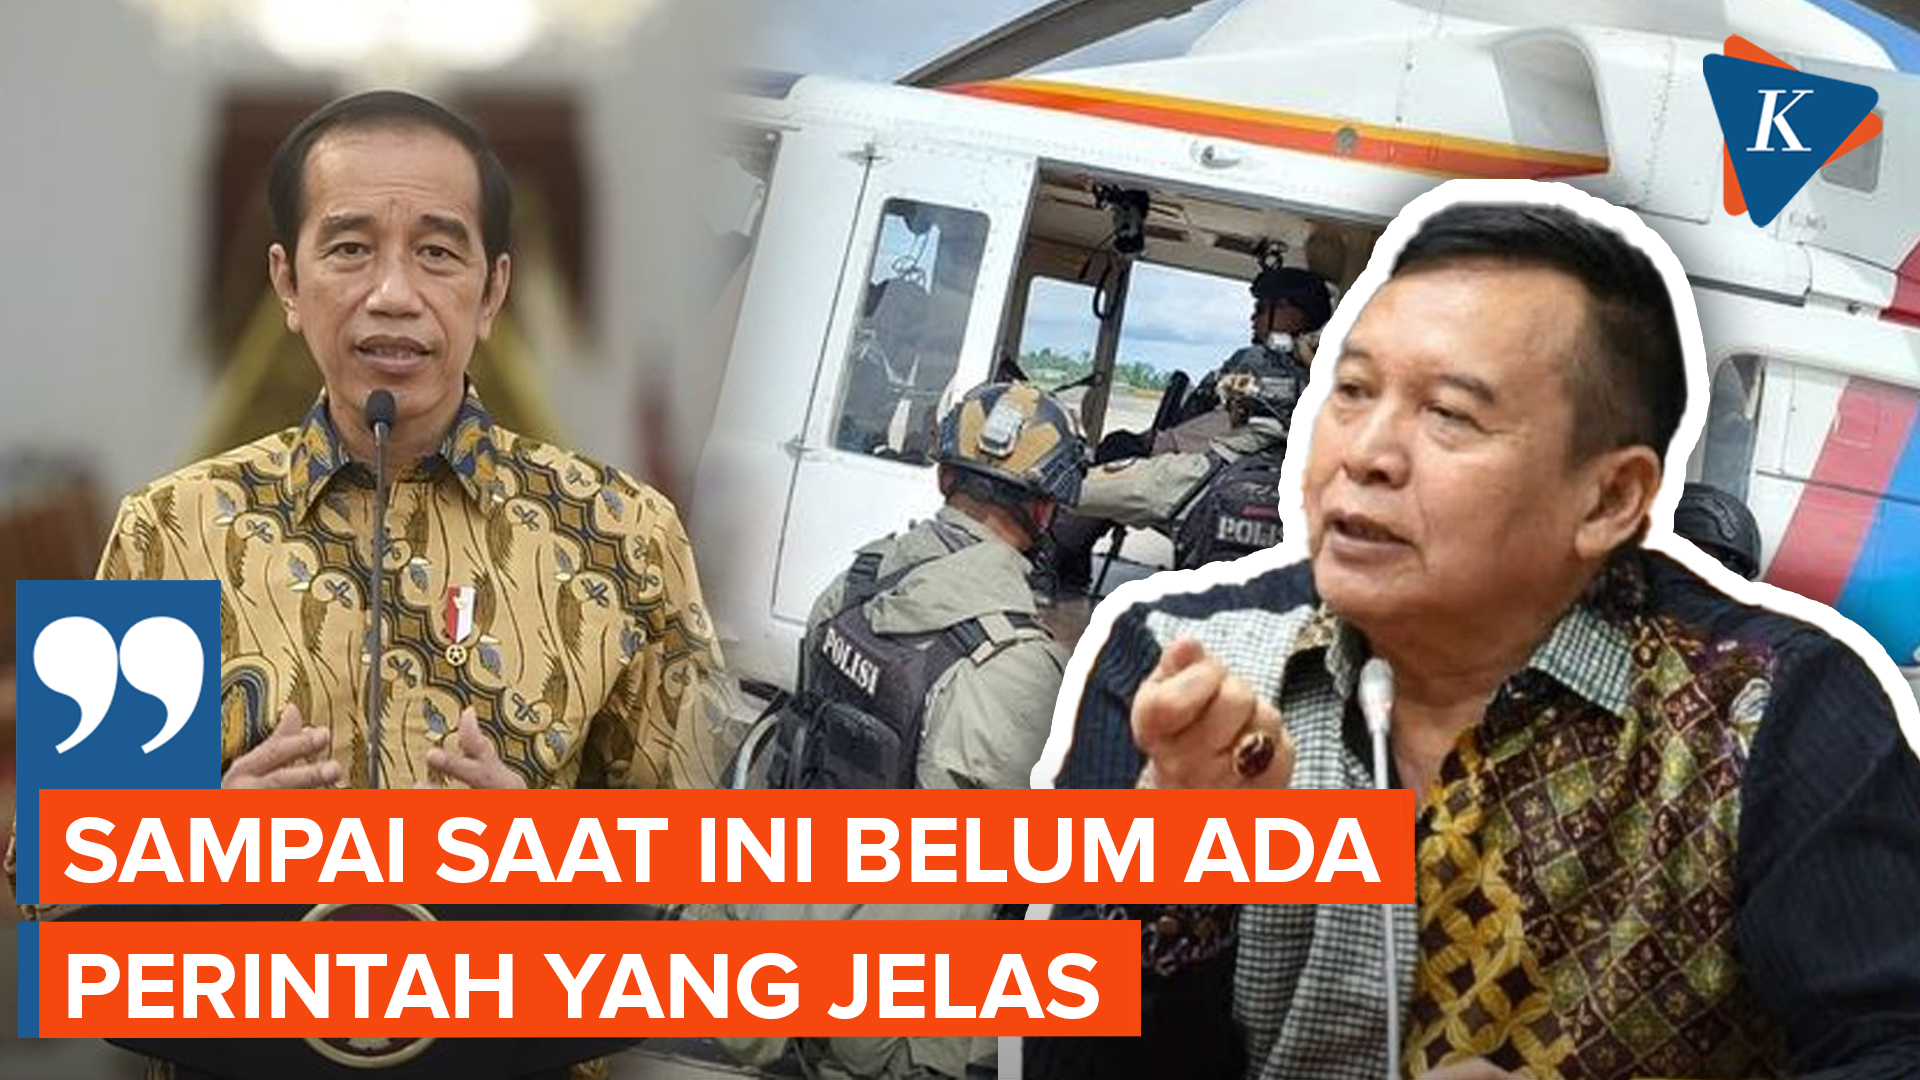 Politisi PDI-P Kritik Jokowi Tak Jelas soal Papua hingga Banyak Prajurit TNI Tewas